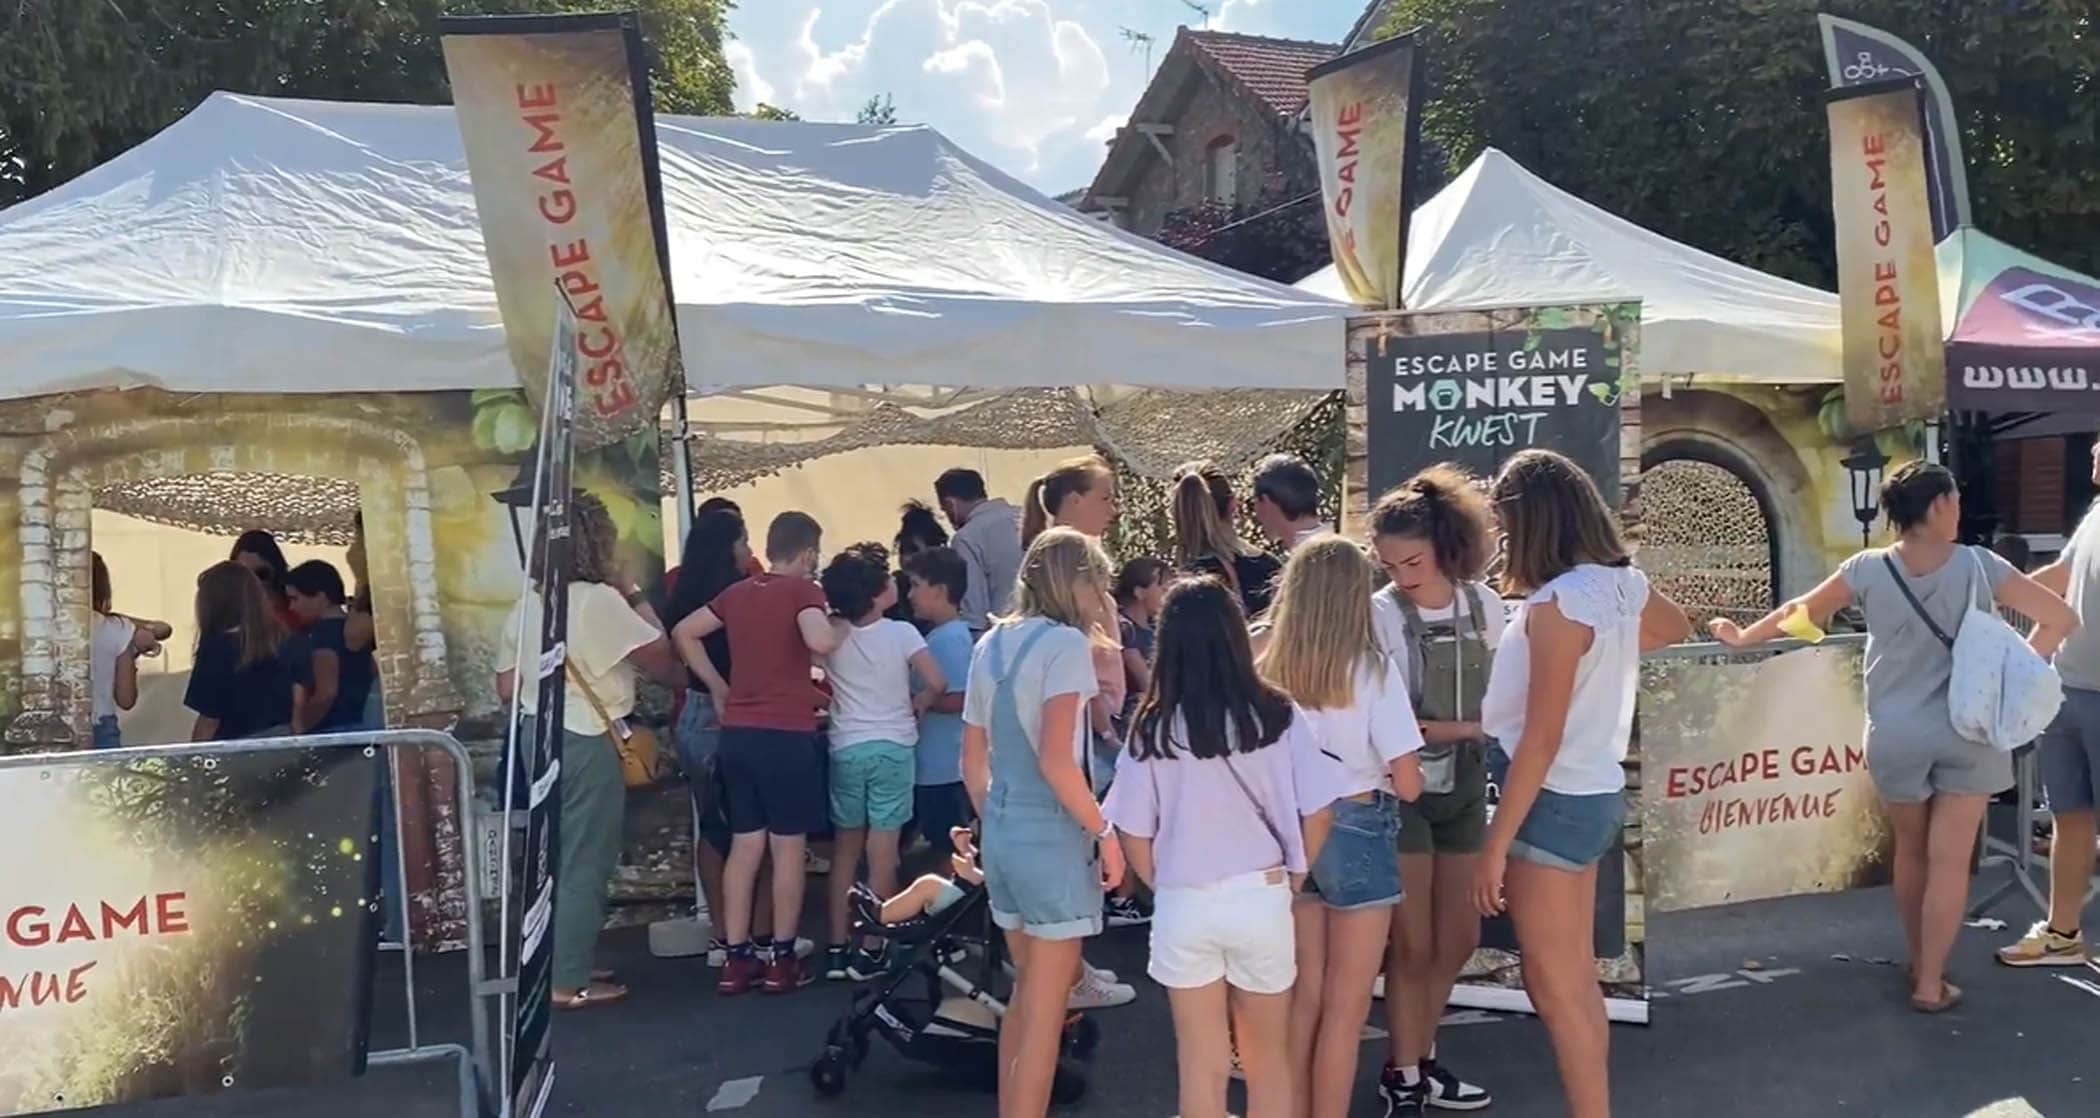 Plusieurs familles patientent devant le stand de Monkey Kwest, un escape game outdoor spécialement organisé pour la fête de la Ville à Garches